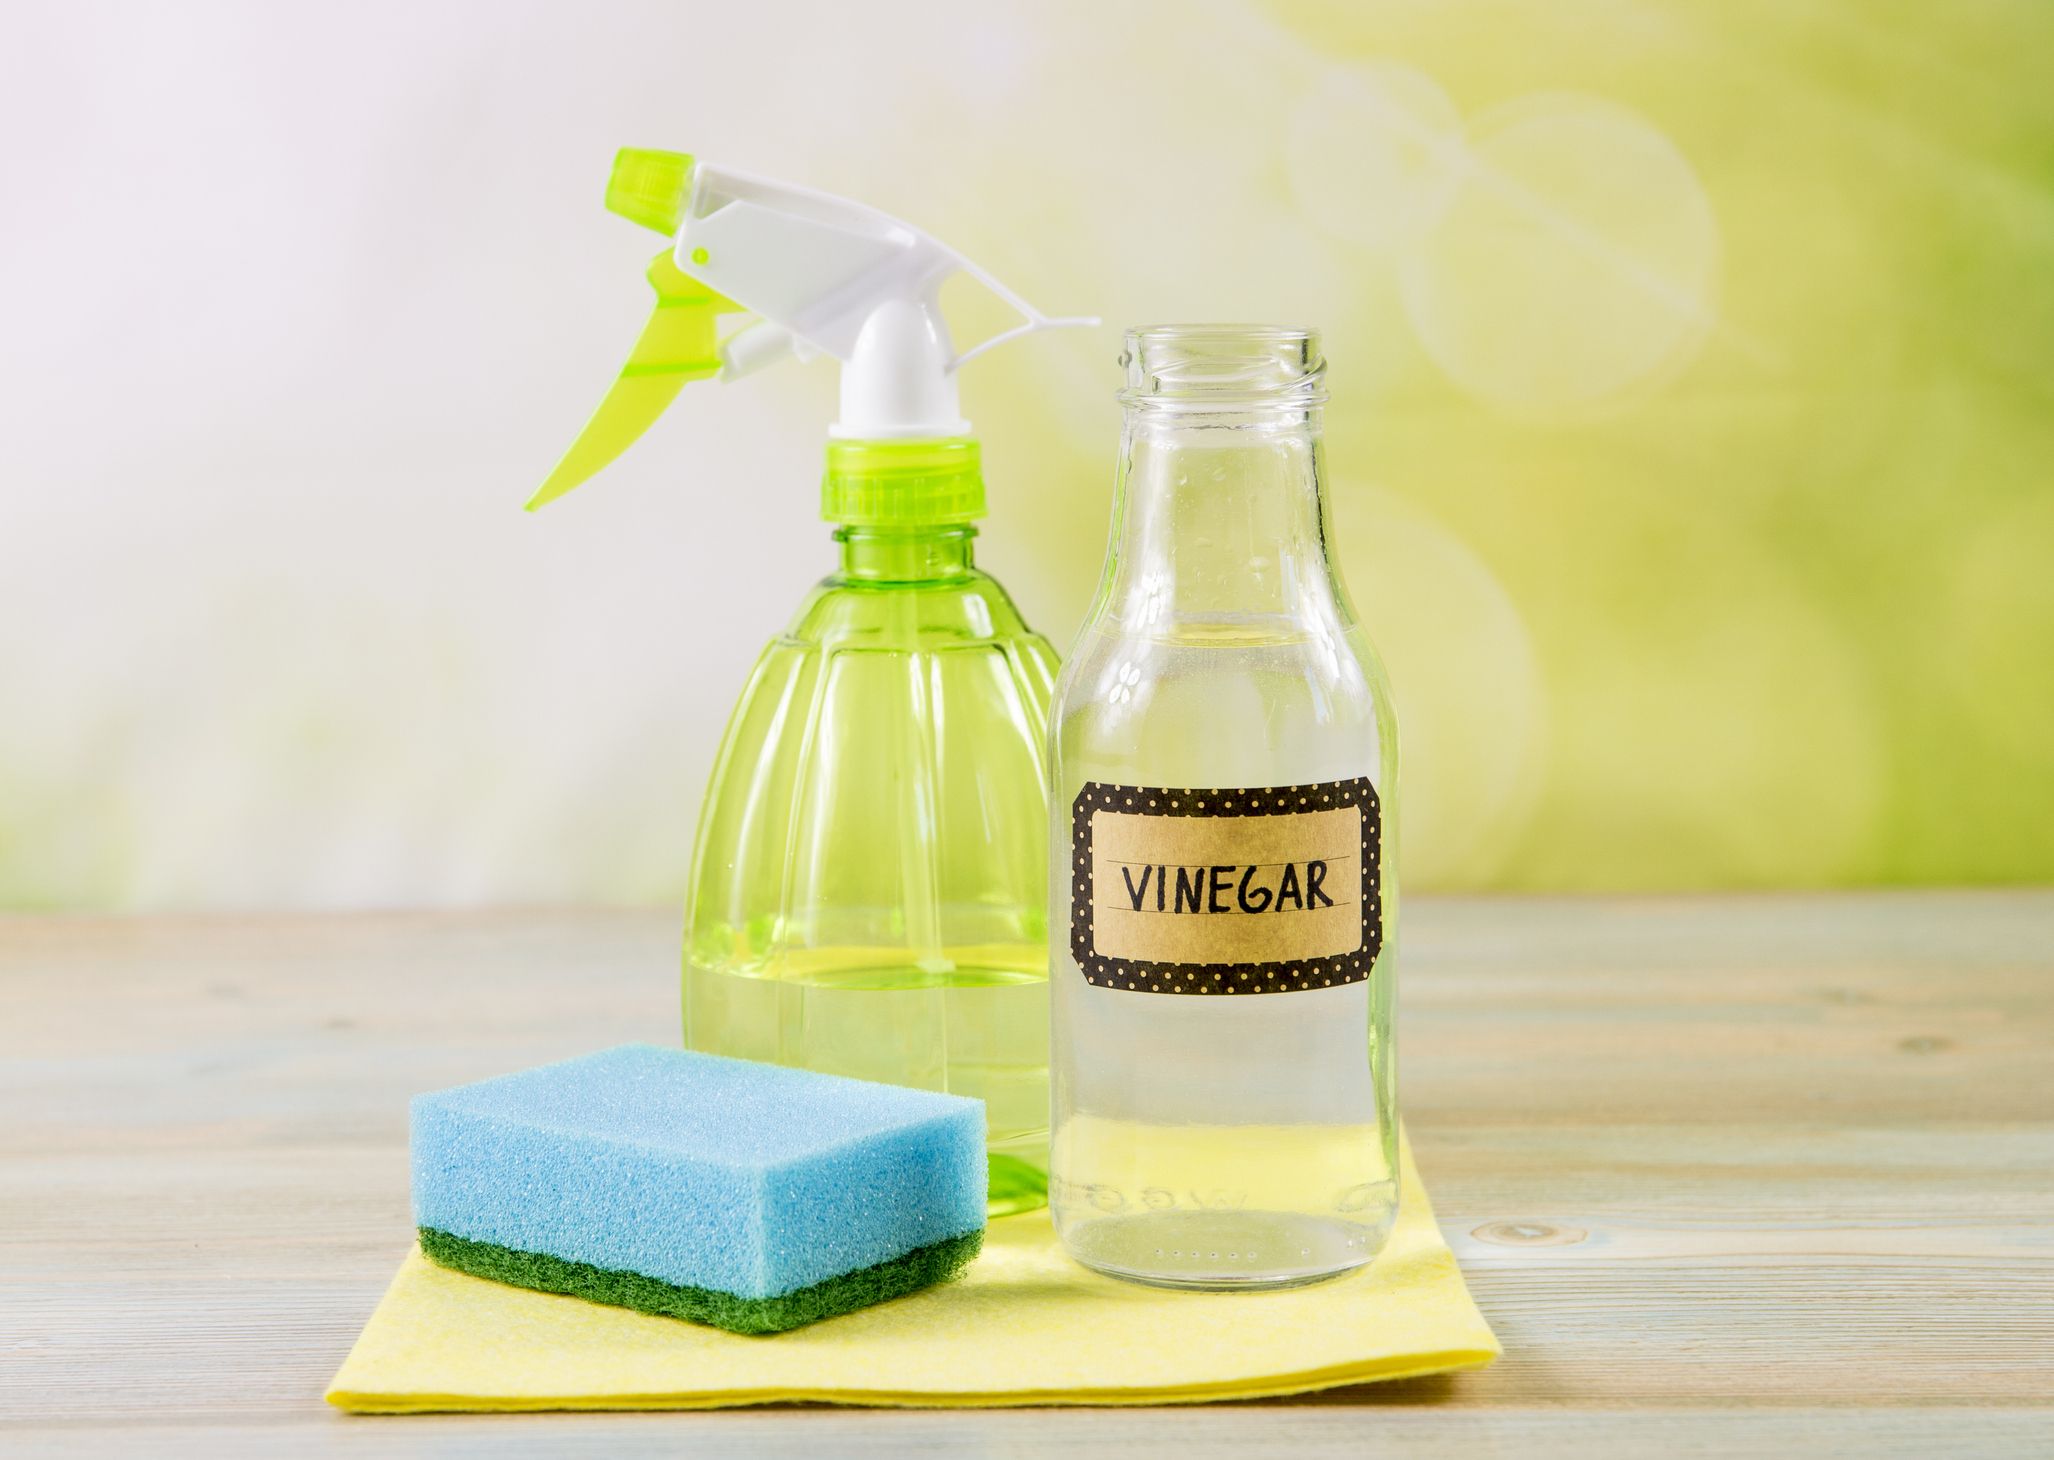 Cleaning Vinegar vs. White Vinegar: Uses Around the House